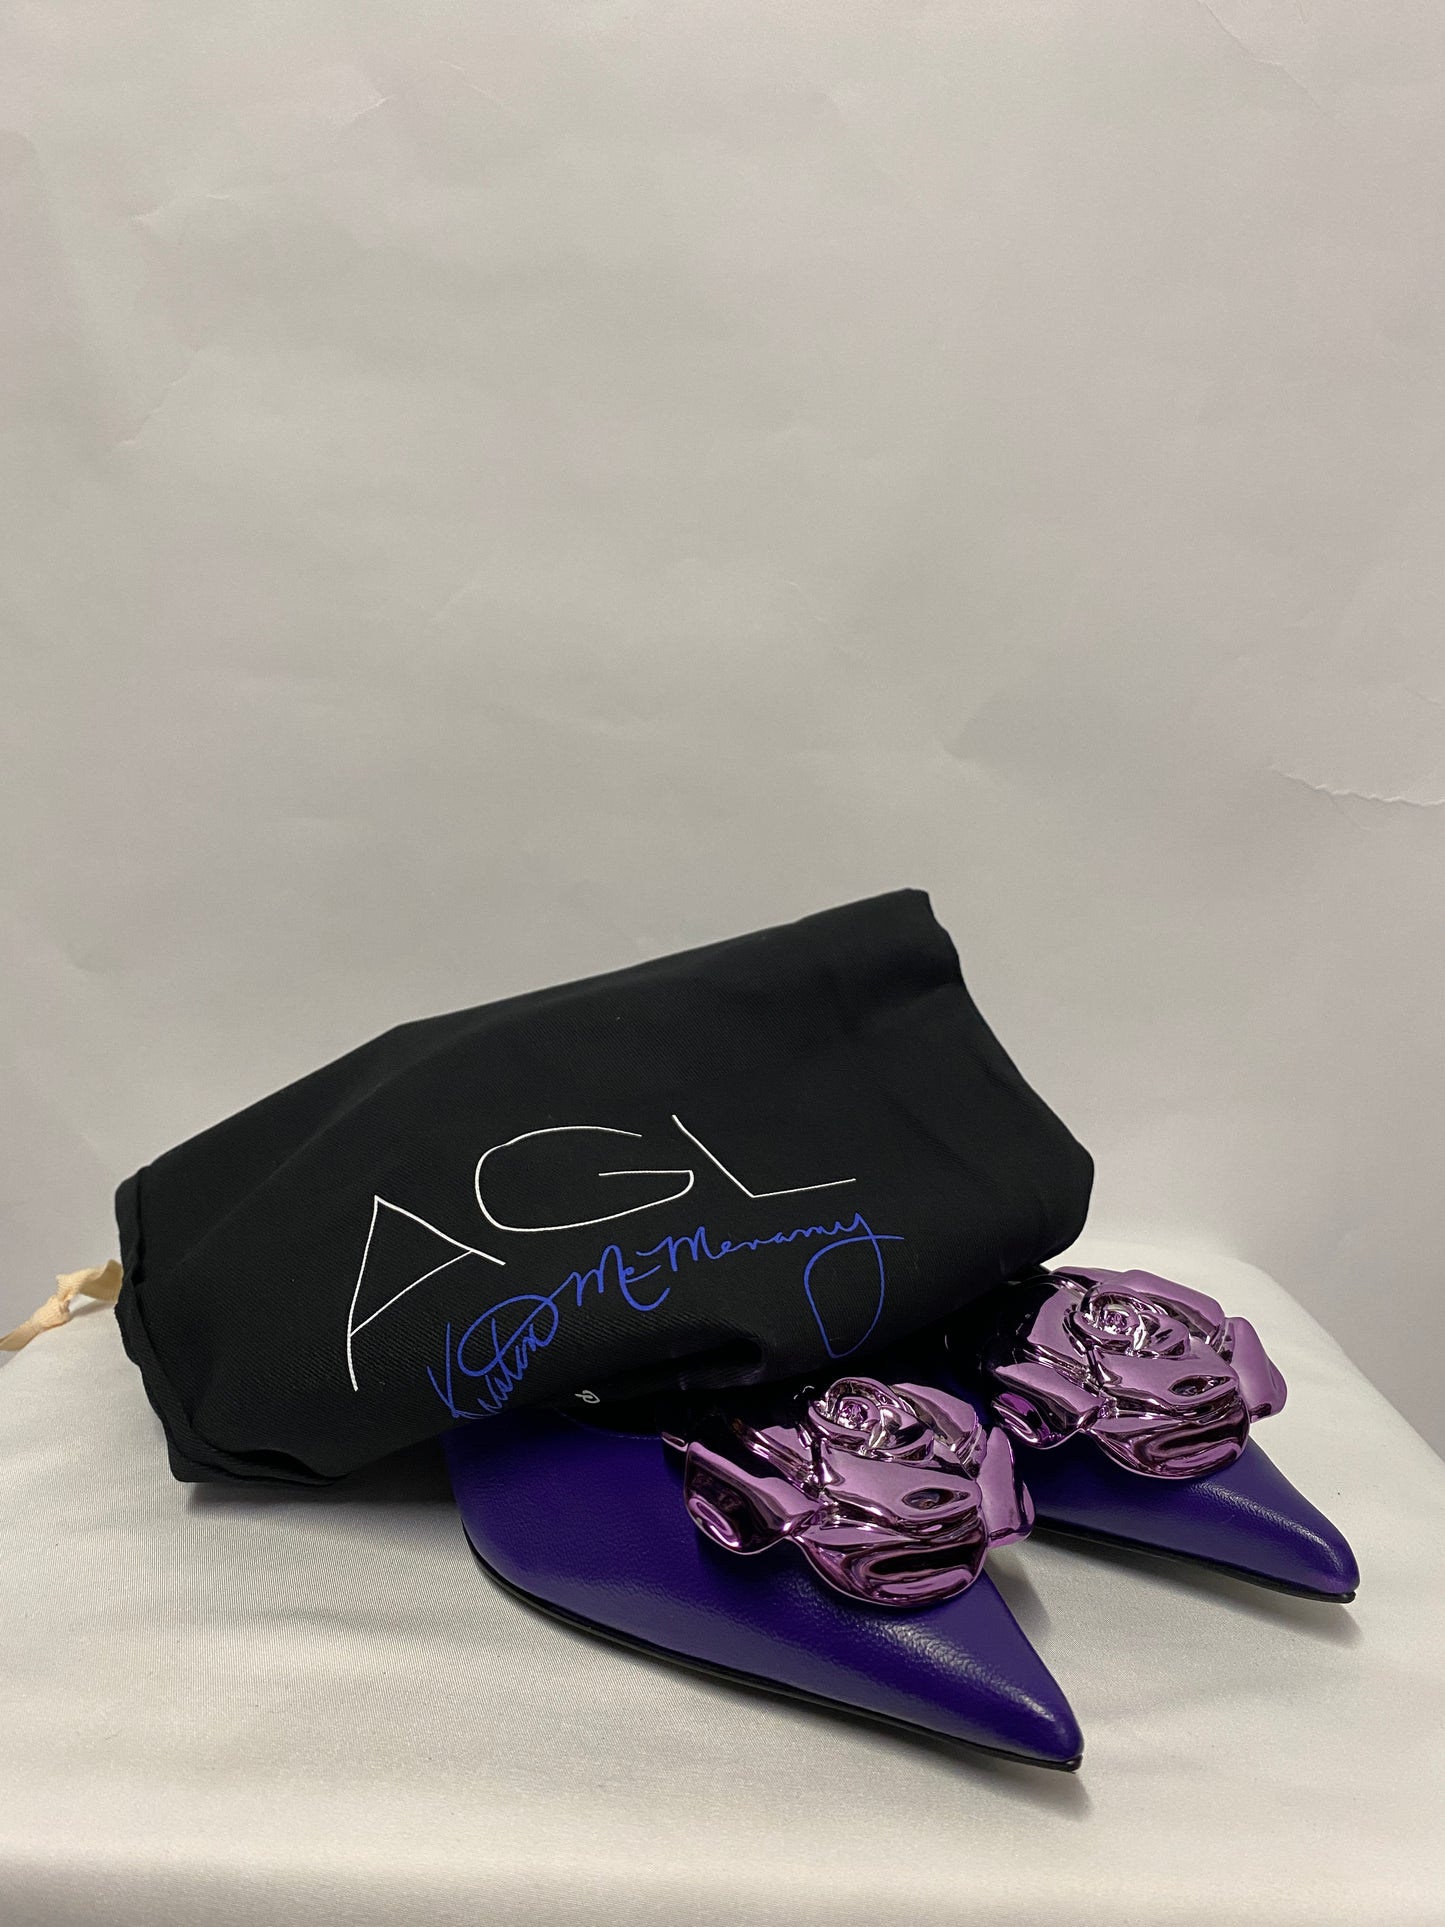 AGL Grape Limited Edition Leather K ONE Pumps 4 BNIB